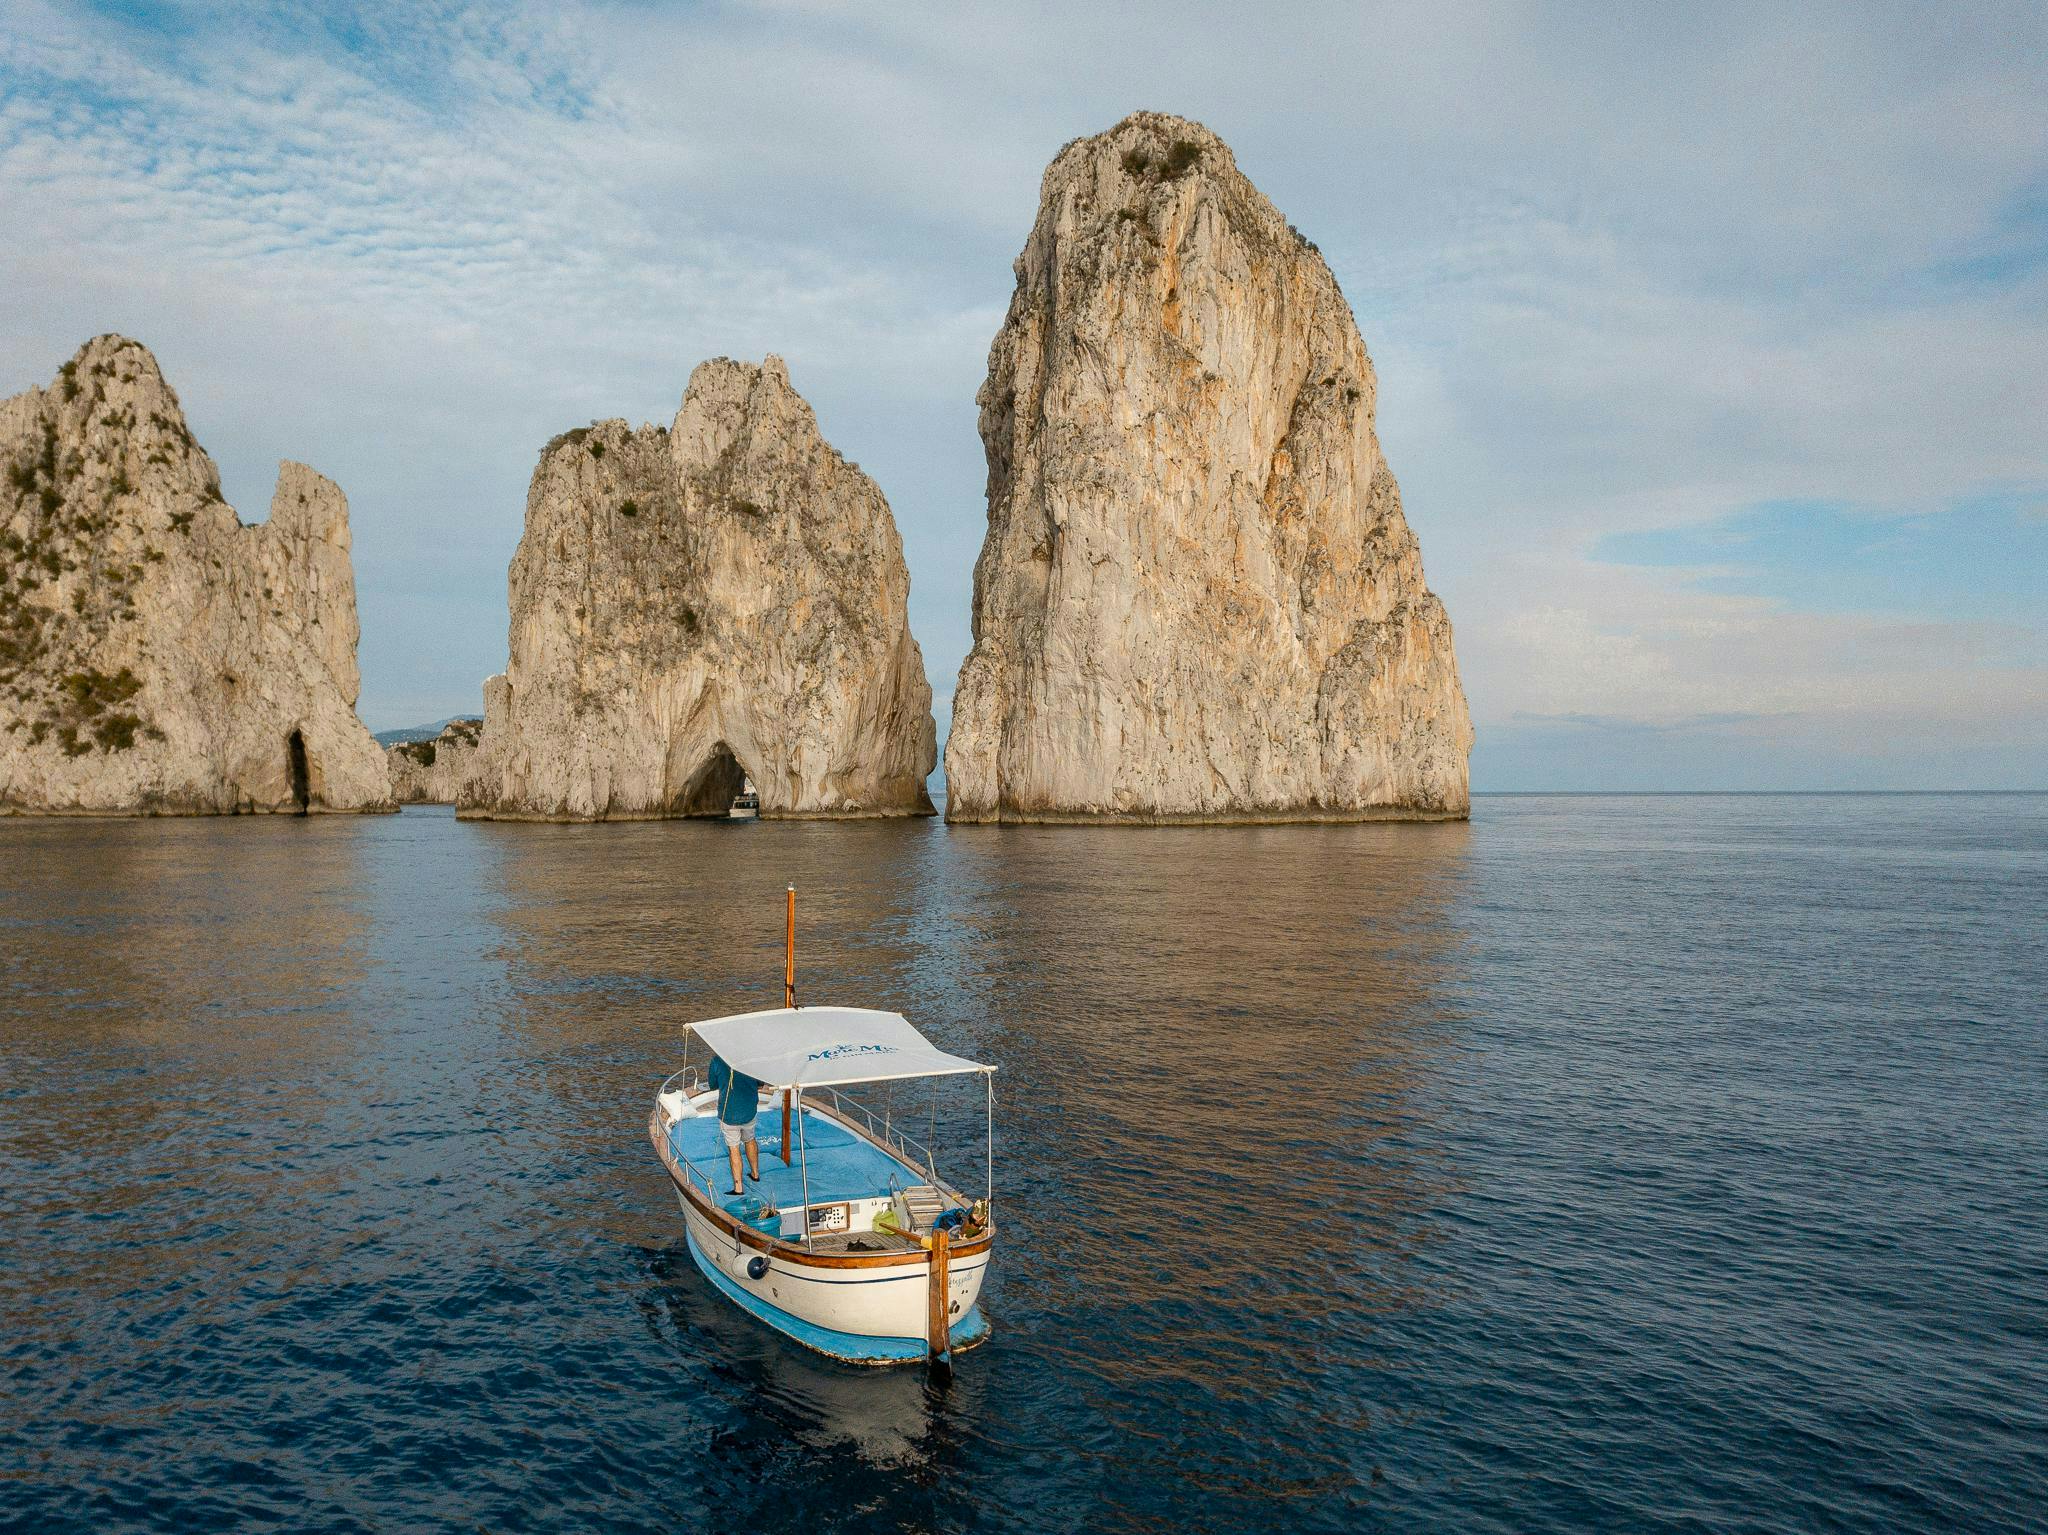 nell'img: Vista sui Faraglioni di Capri